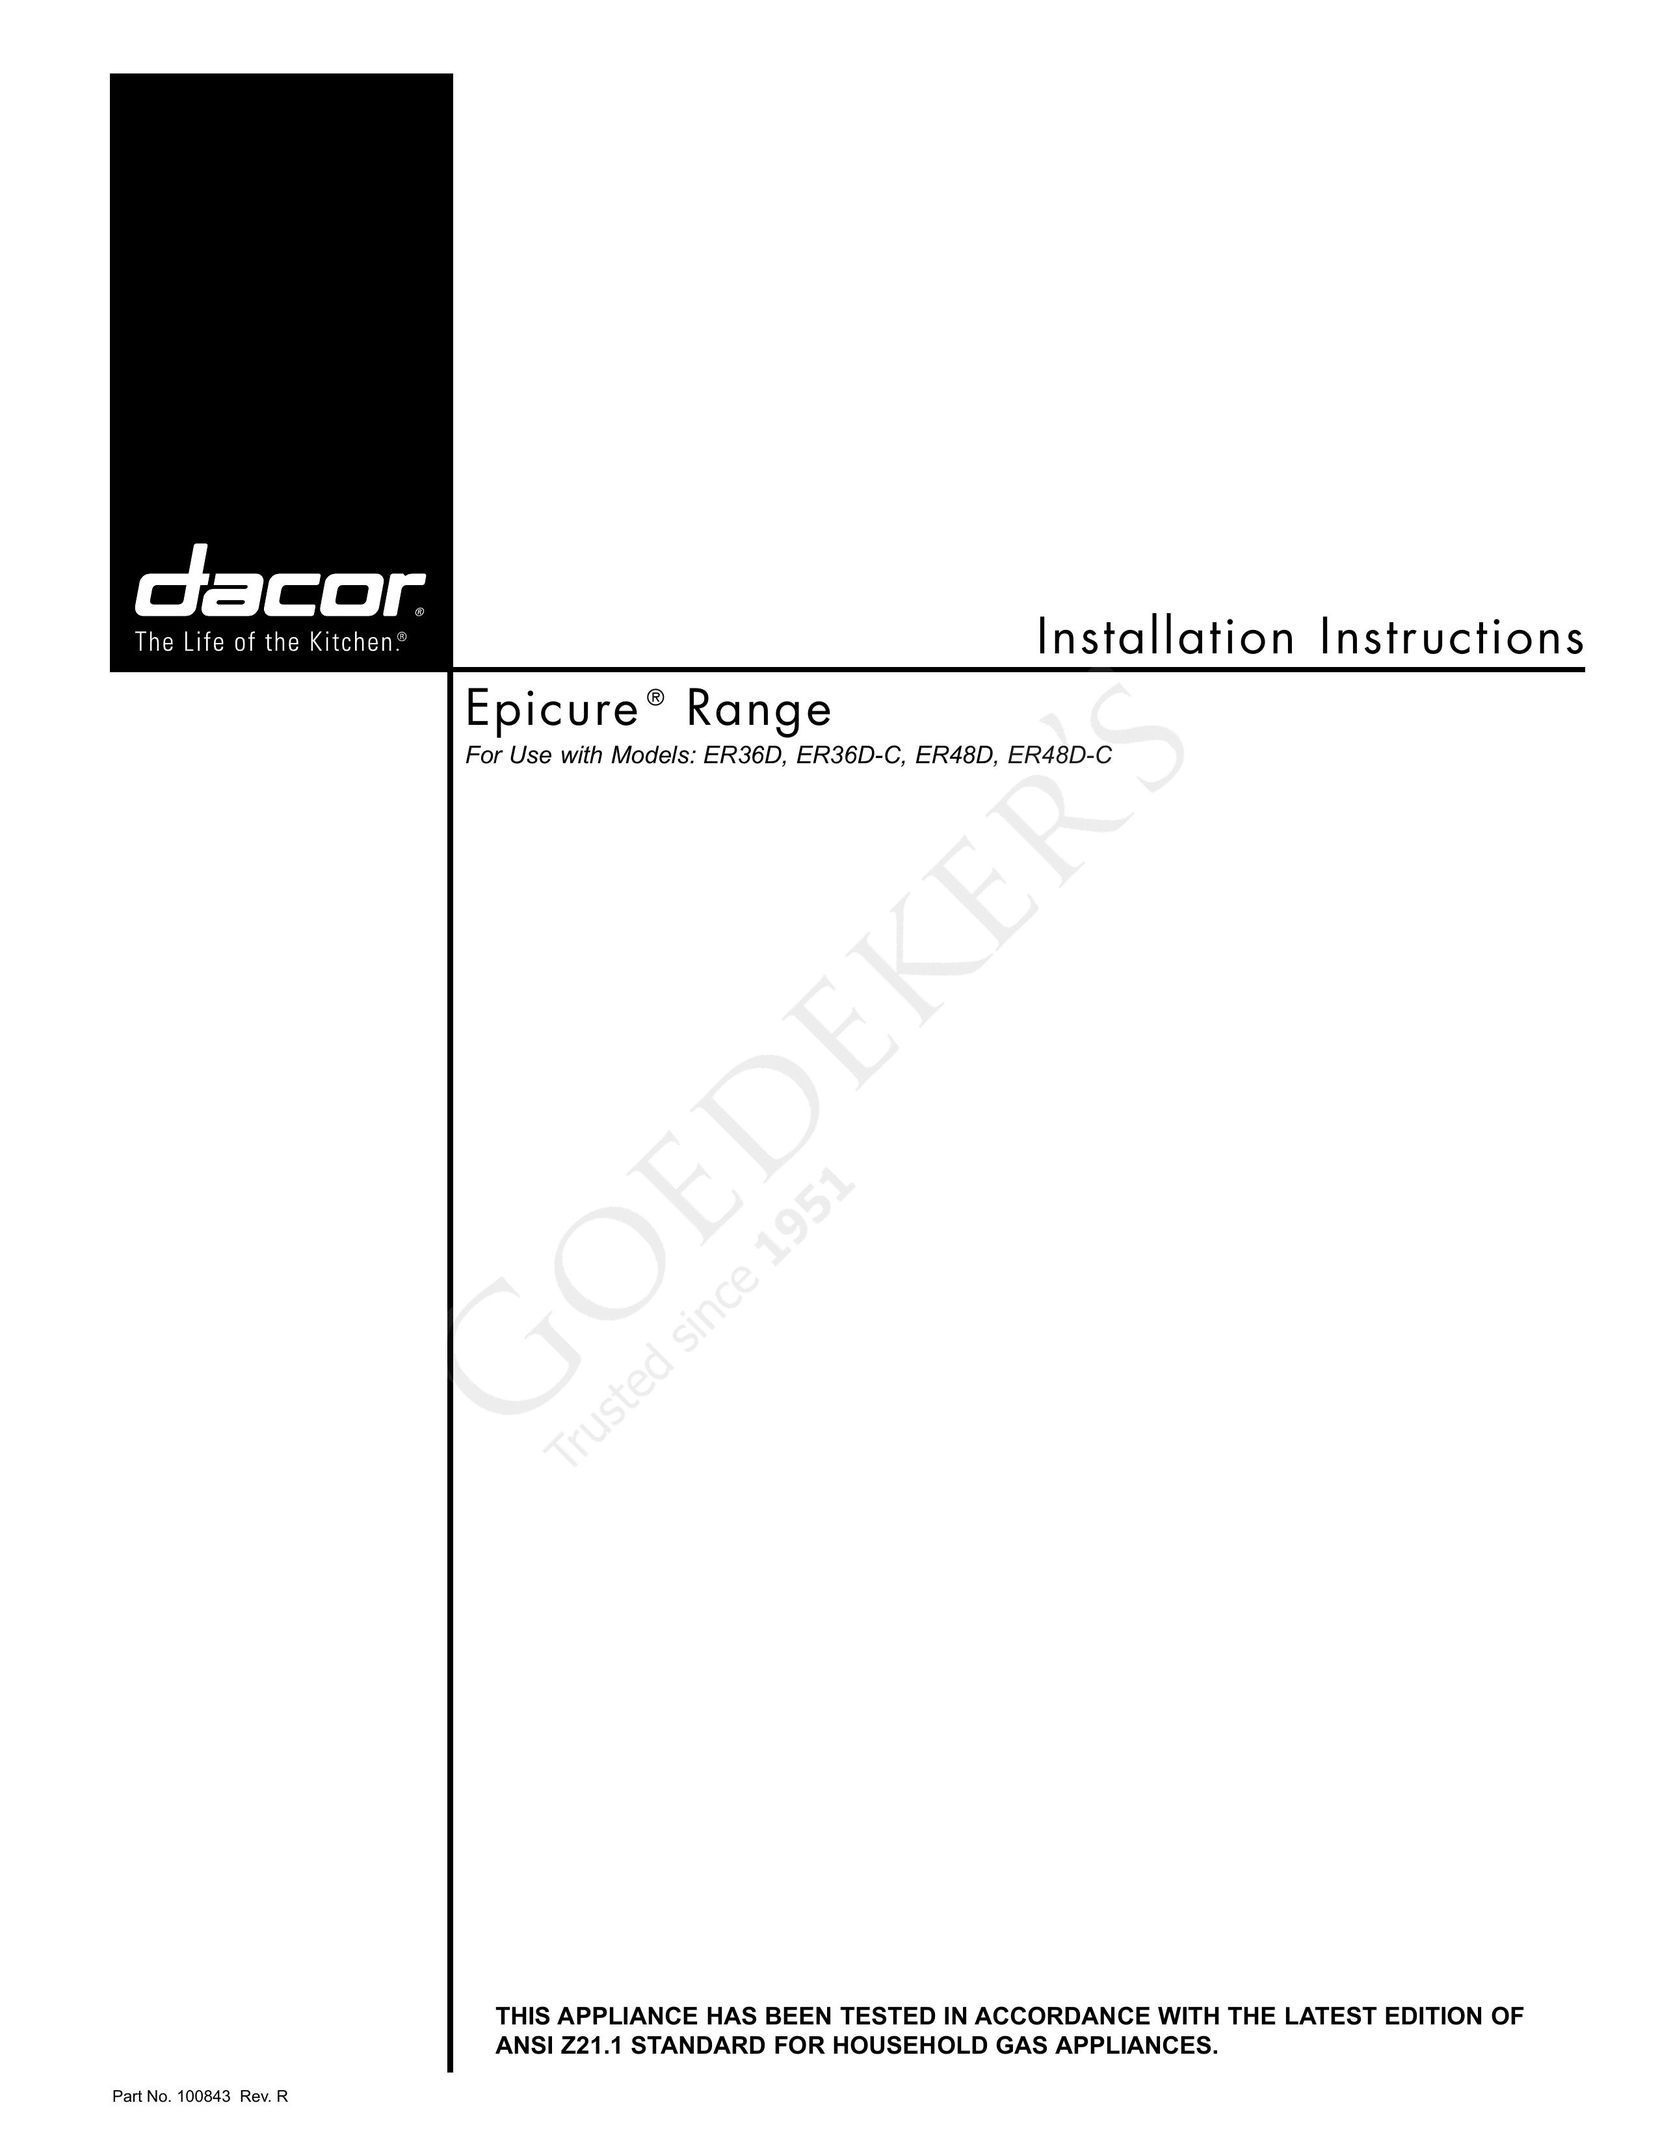 Dacor ER48D-C Range User Manual